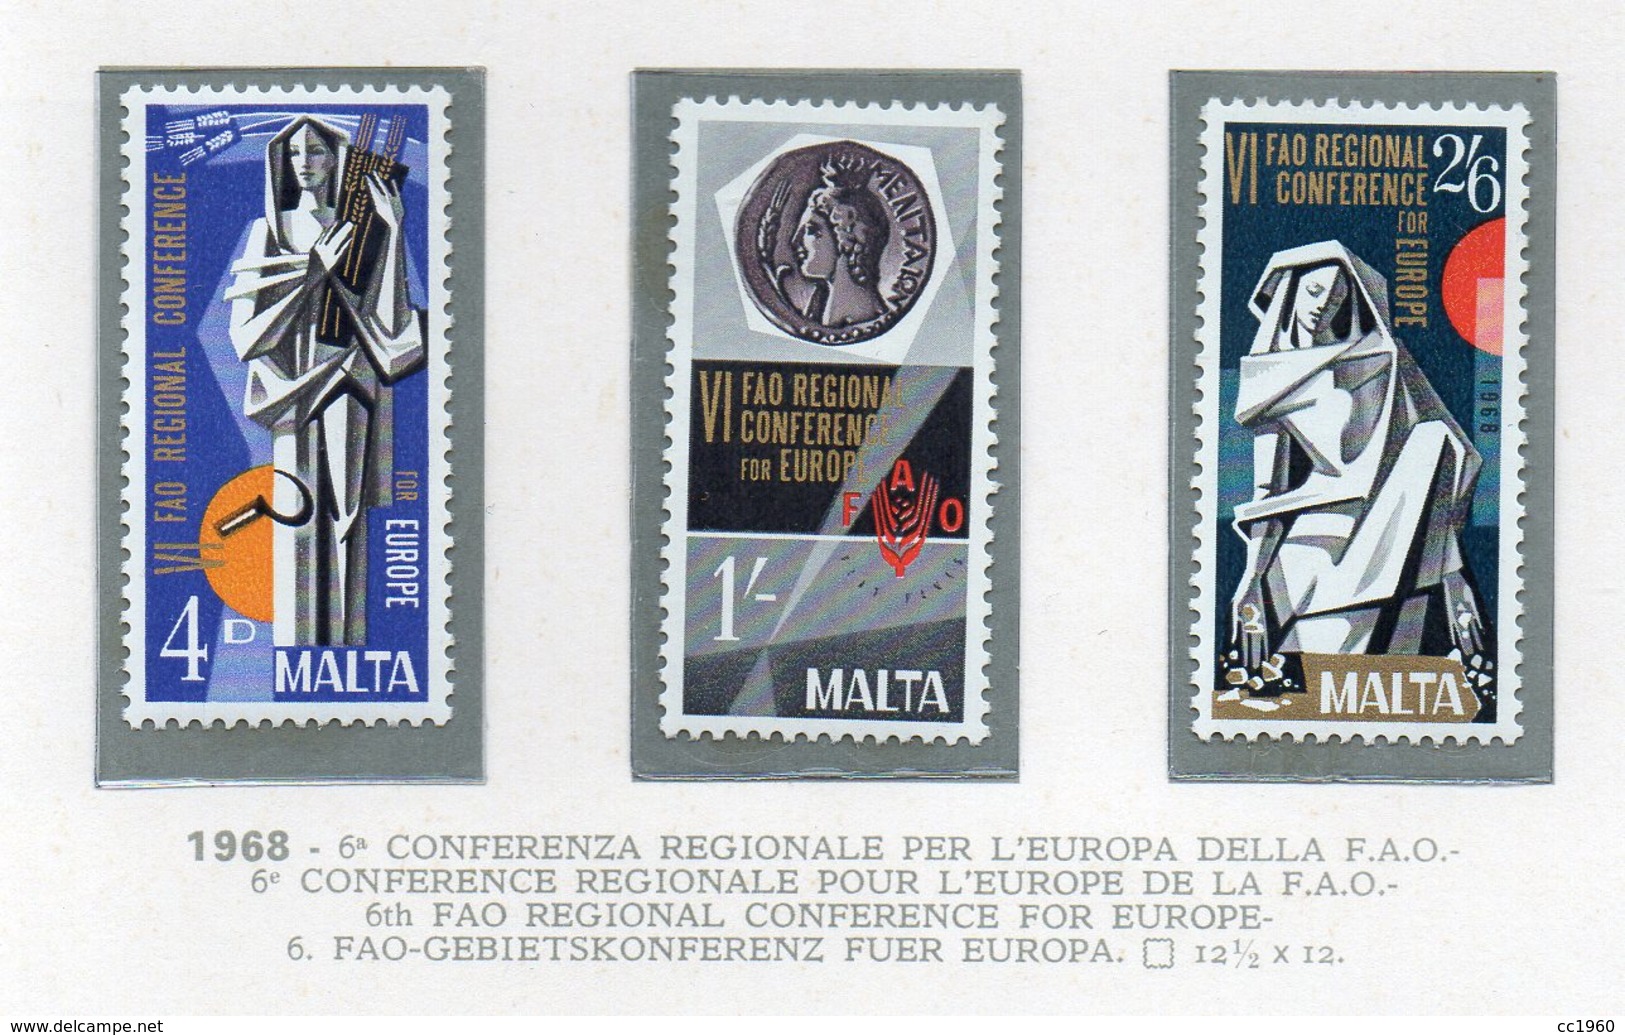 Malta - 1968 - 6^ Conferenza Regionale Per L'Europa Della F.A.O. - 3 Valori - Nuovi - Vedi Foto - (FDC14019) - Malta